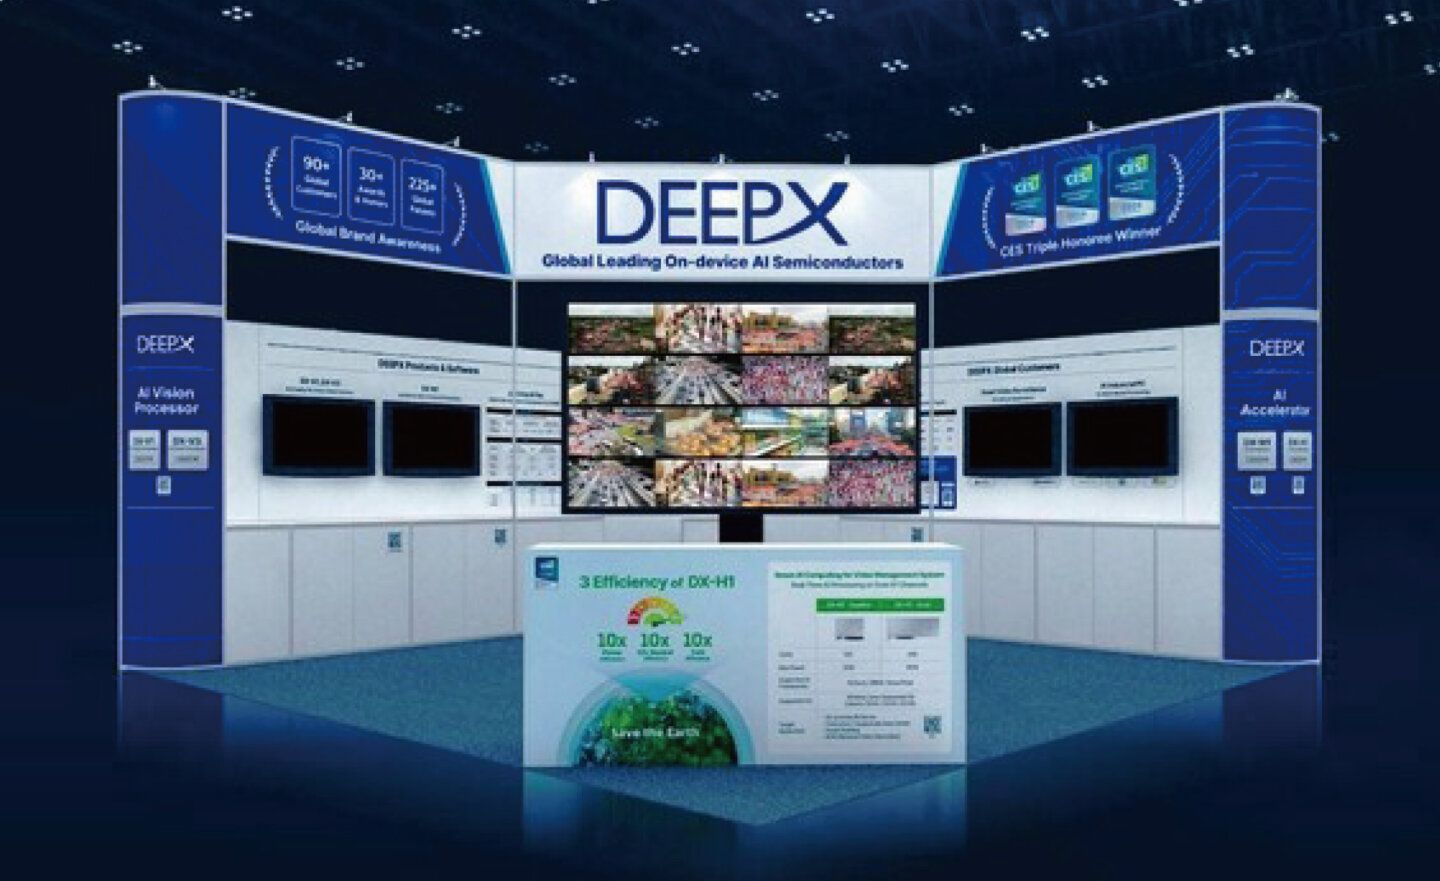 DEEPX 將第一代 AI 晶片拓展至智慧資安防護和影片分析市場